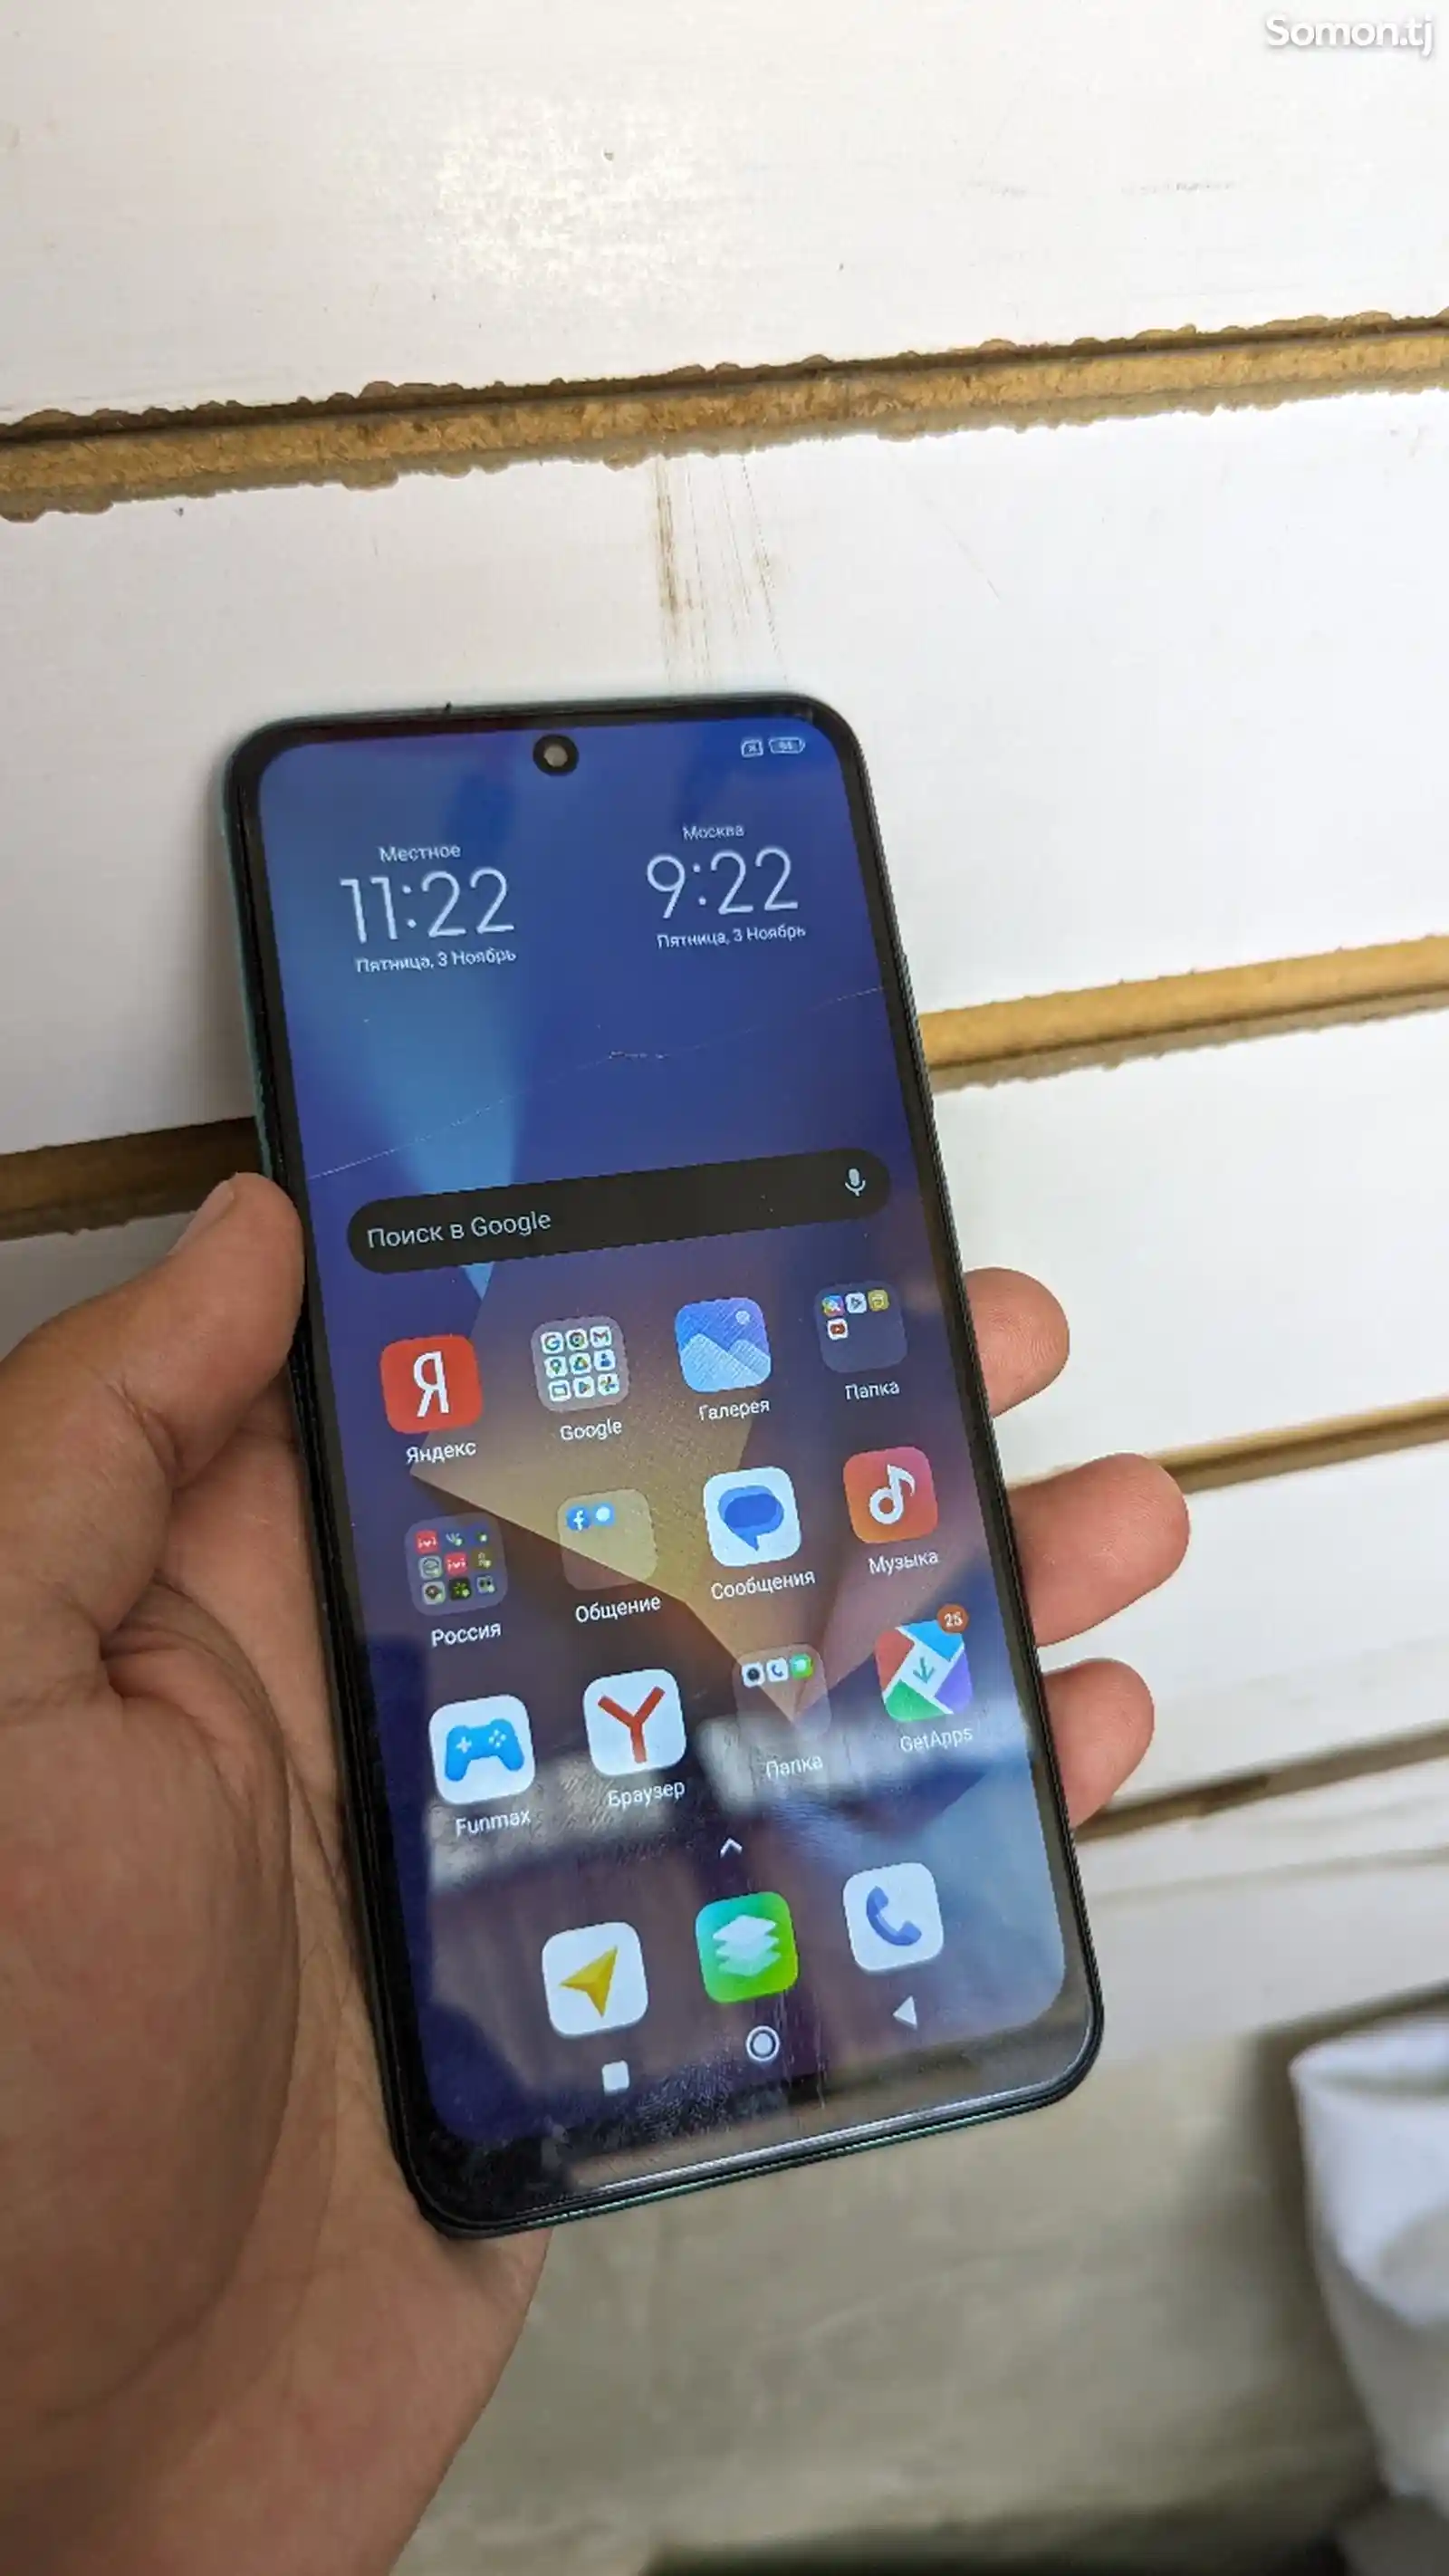 Xiaomi Redmi Note 10s-2